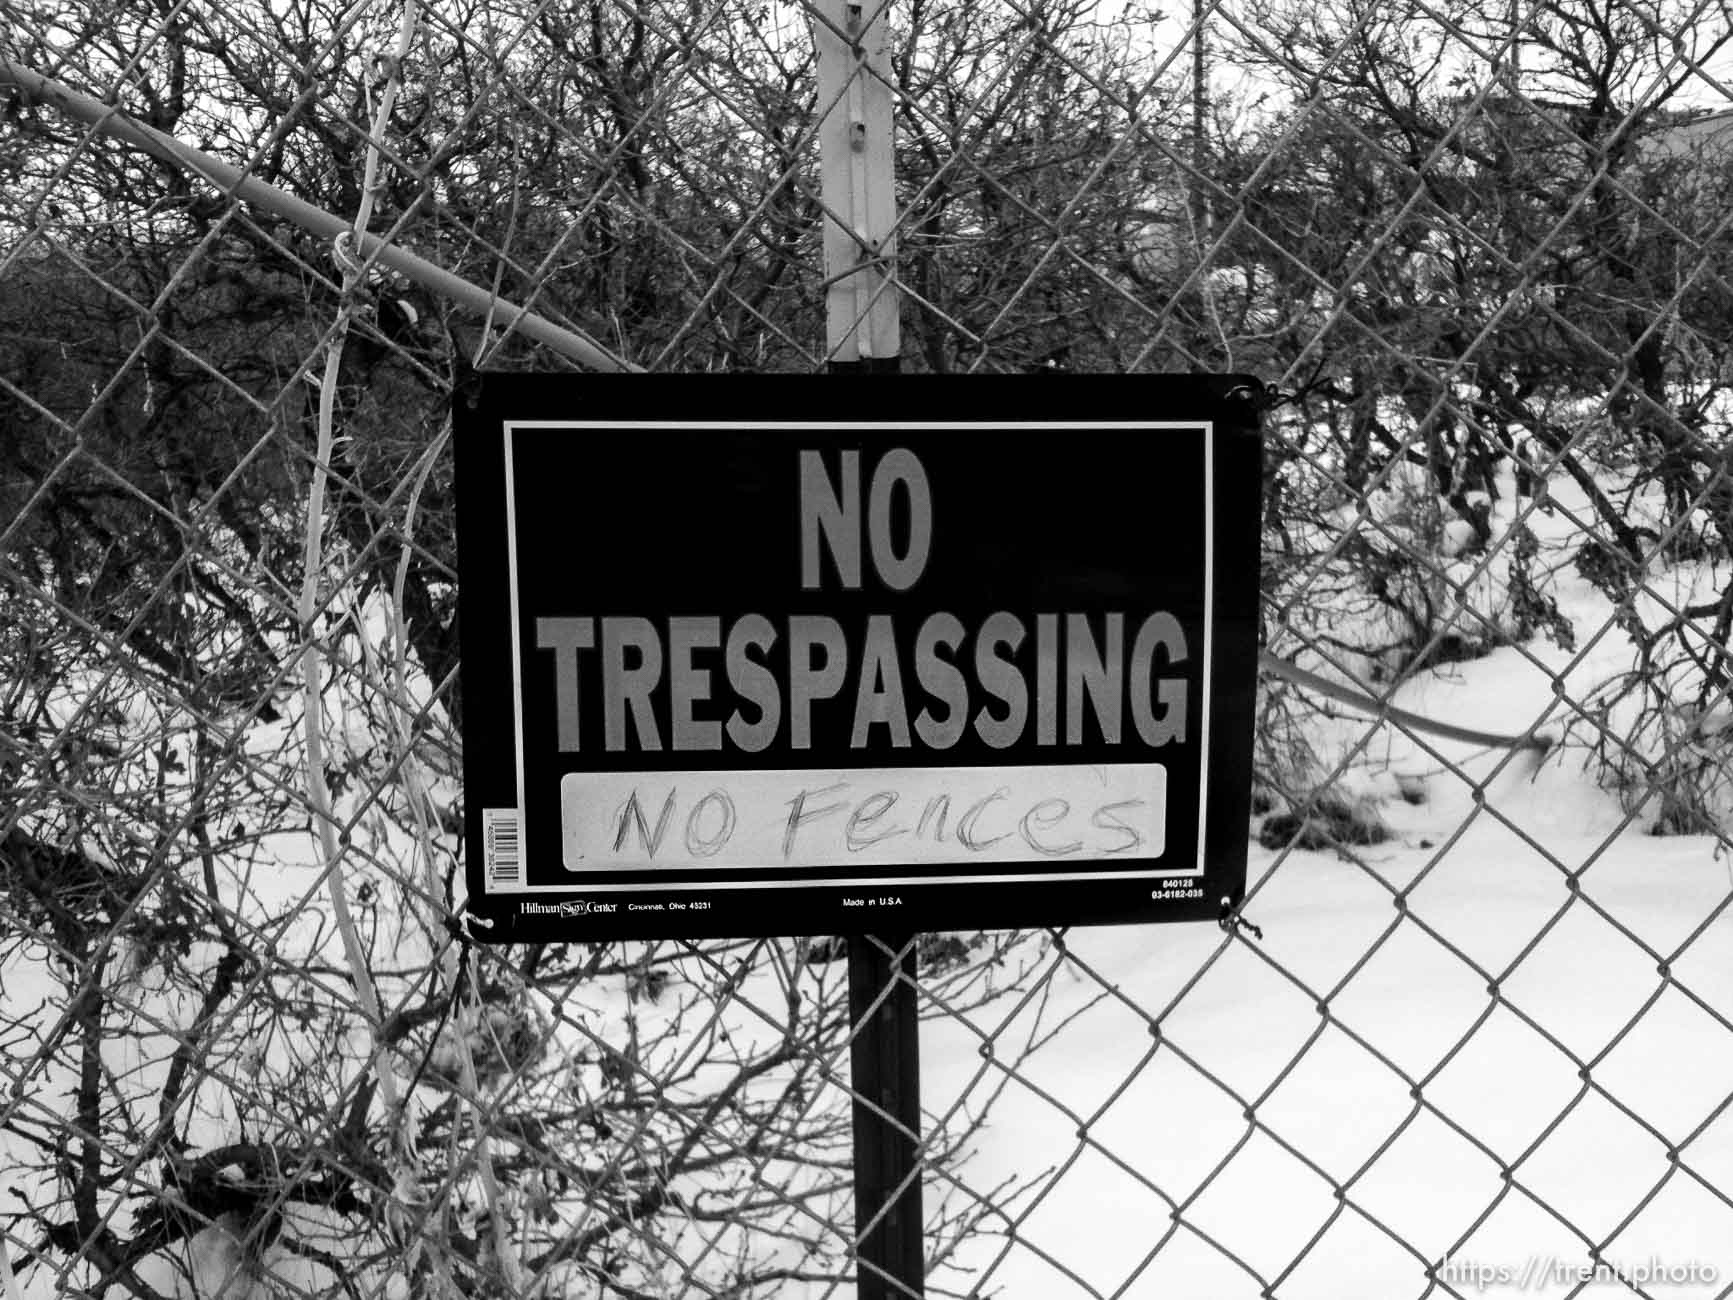 No Fences